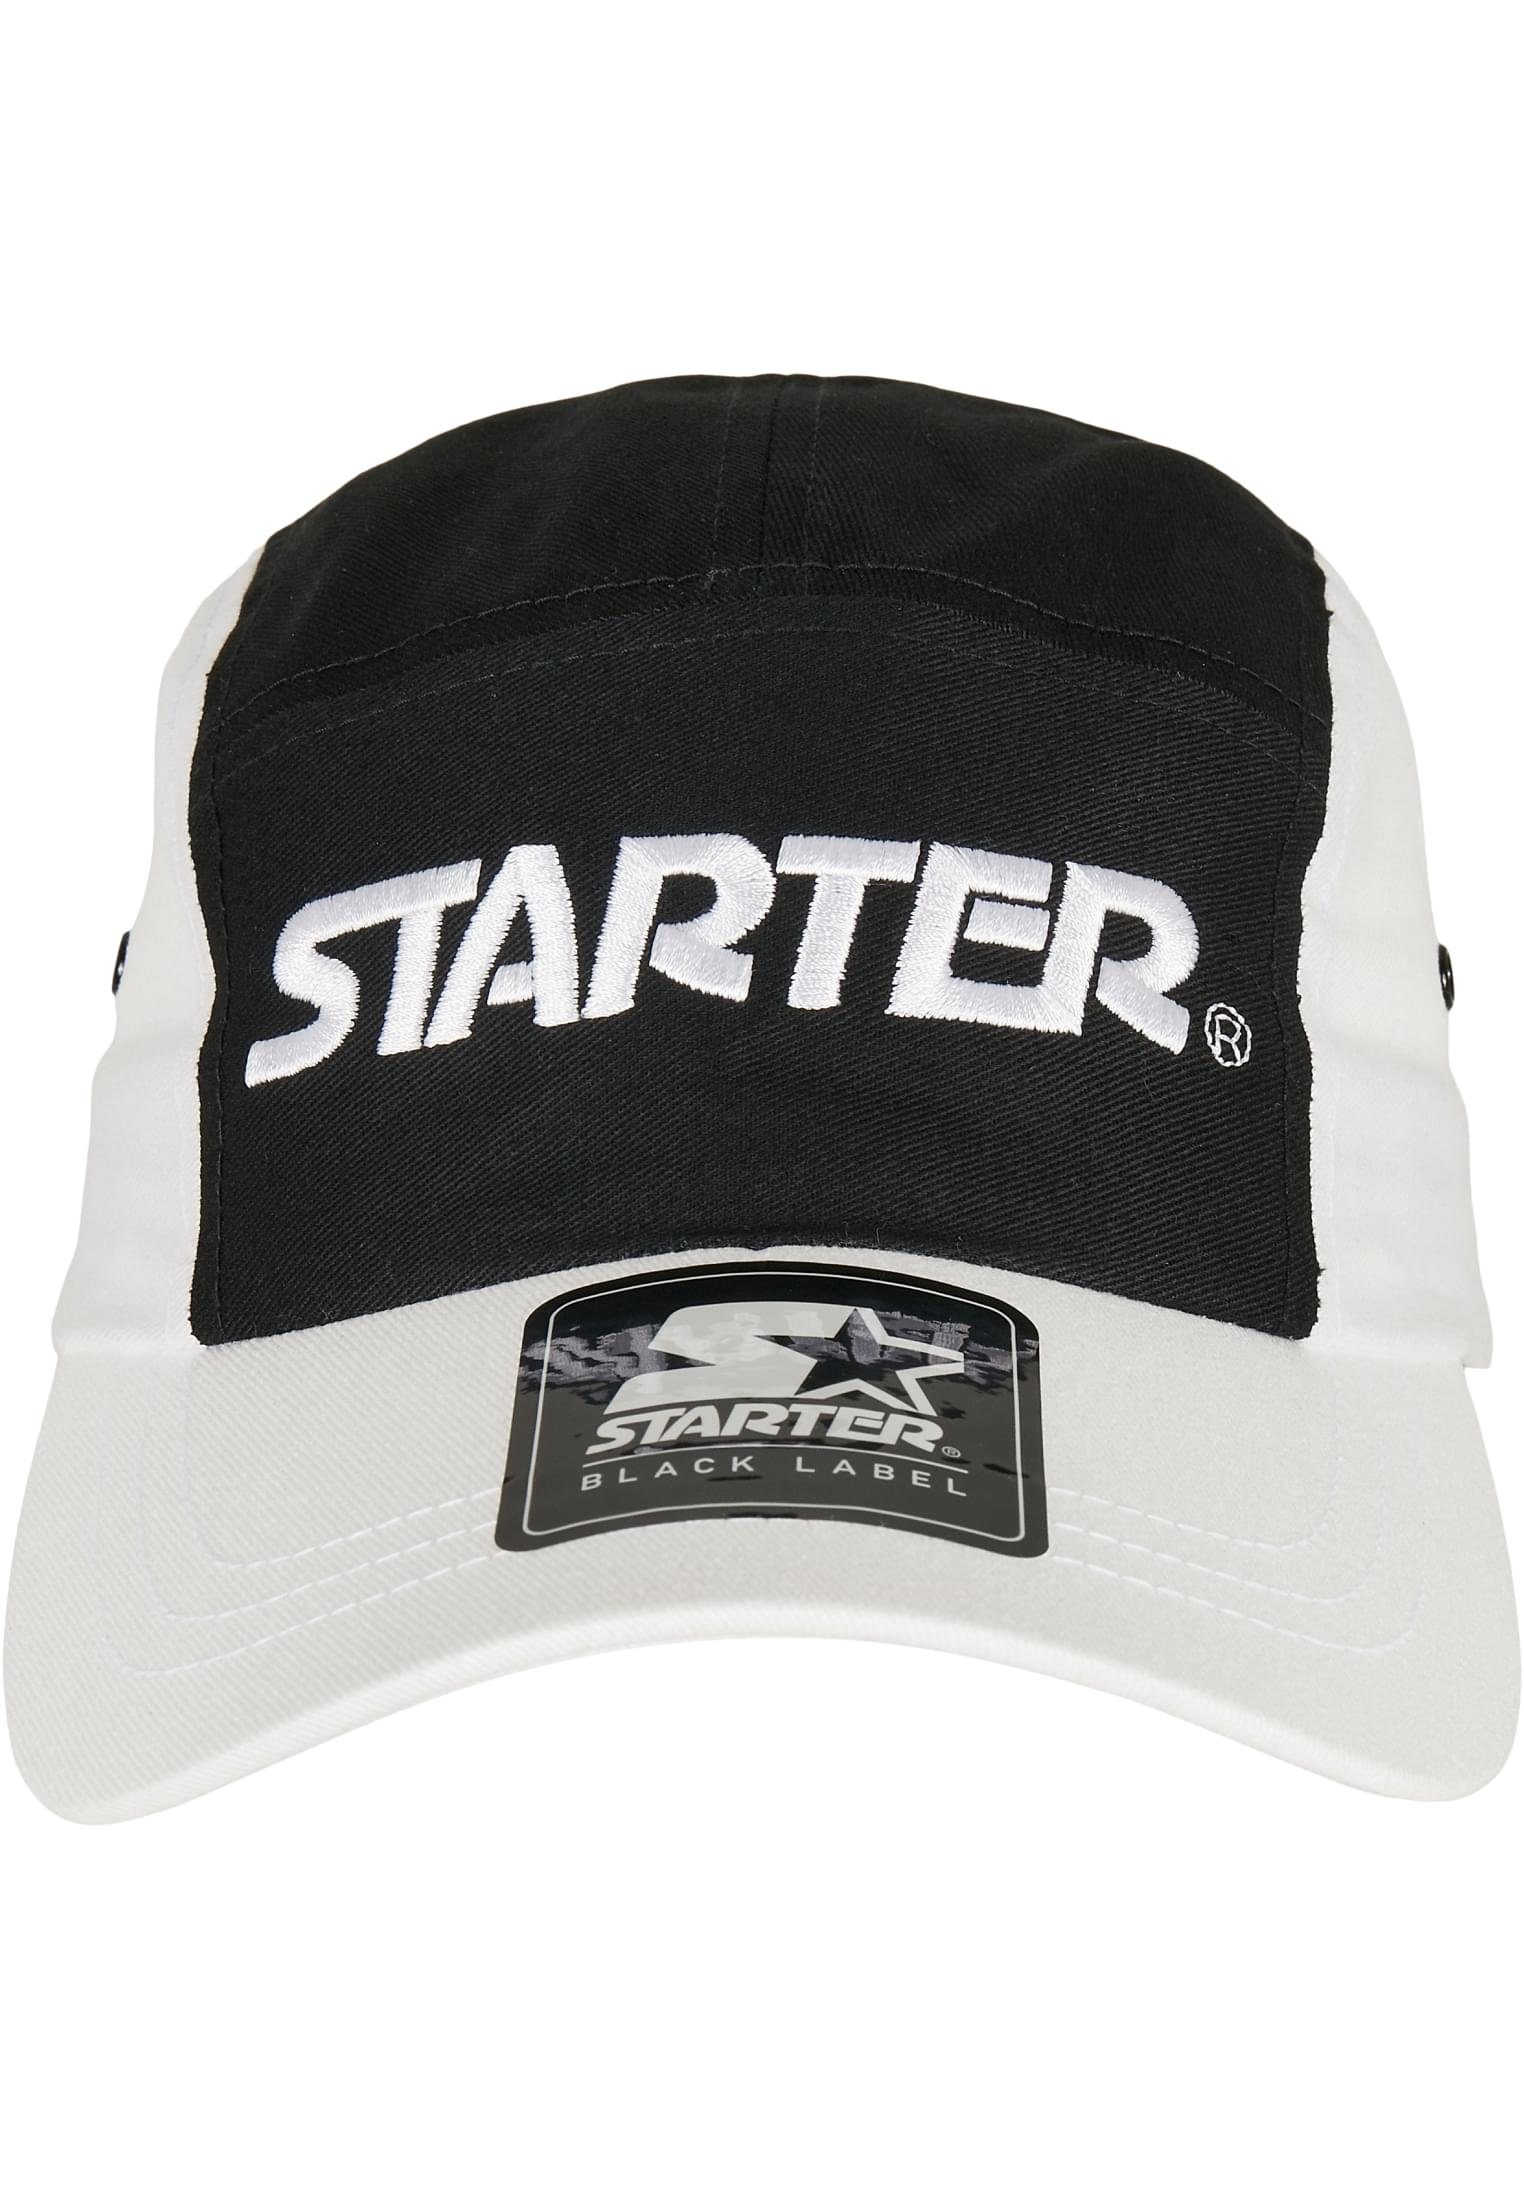 Fresh Cap, und Jockey Verschlussschnalle Starter Vents Accessoires Black Label seitliche Snapback Air Cap